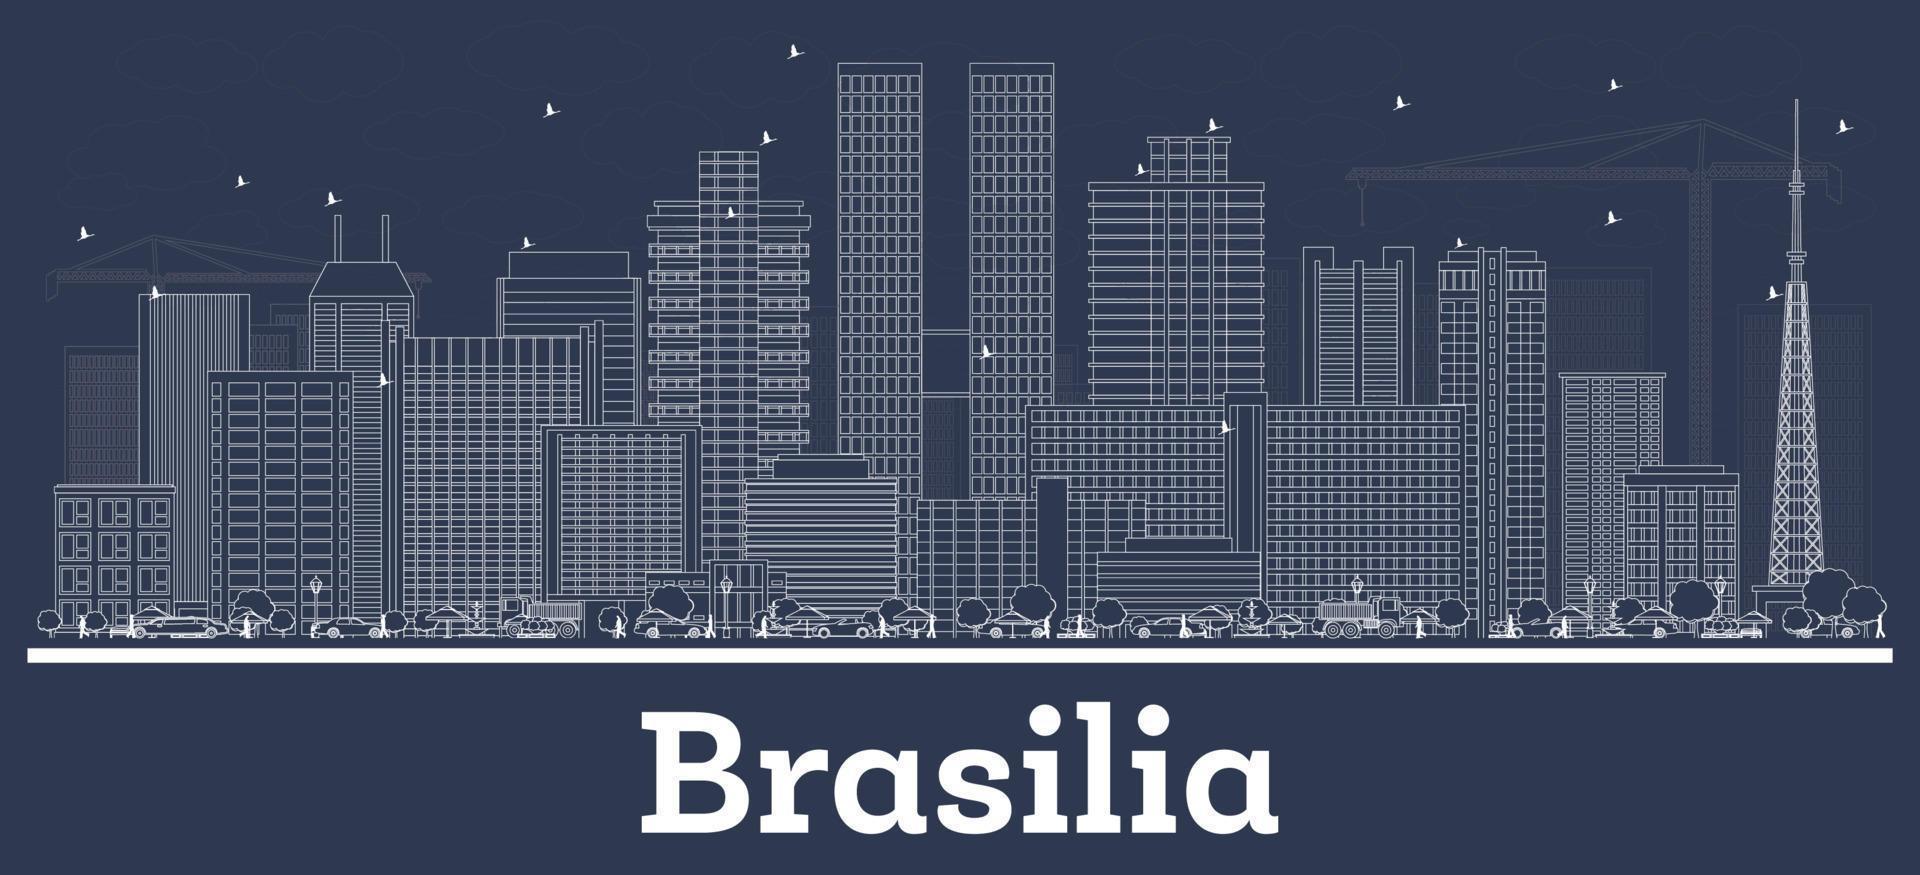 delineie o horizonte da cidade de brasilia brasil com edifícios brancos. vetor